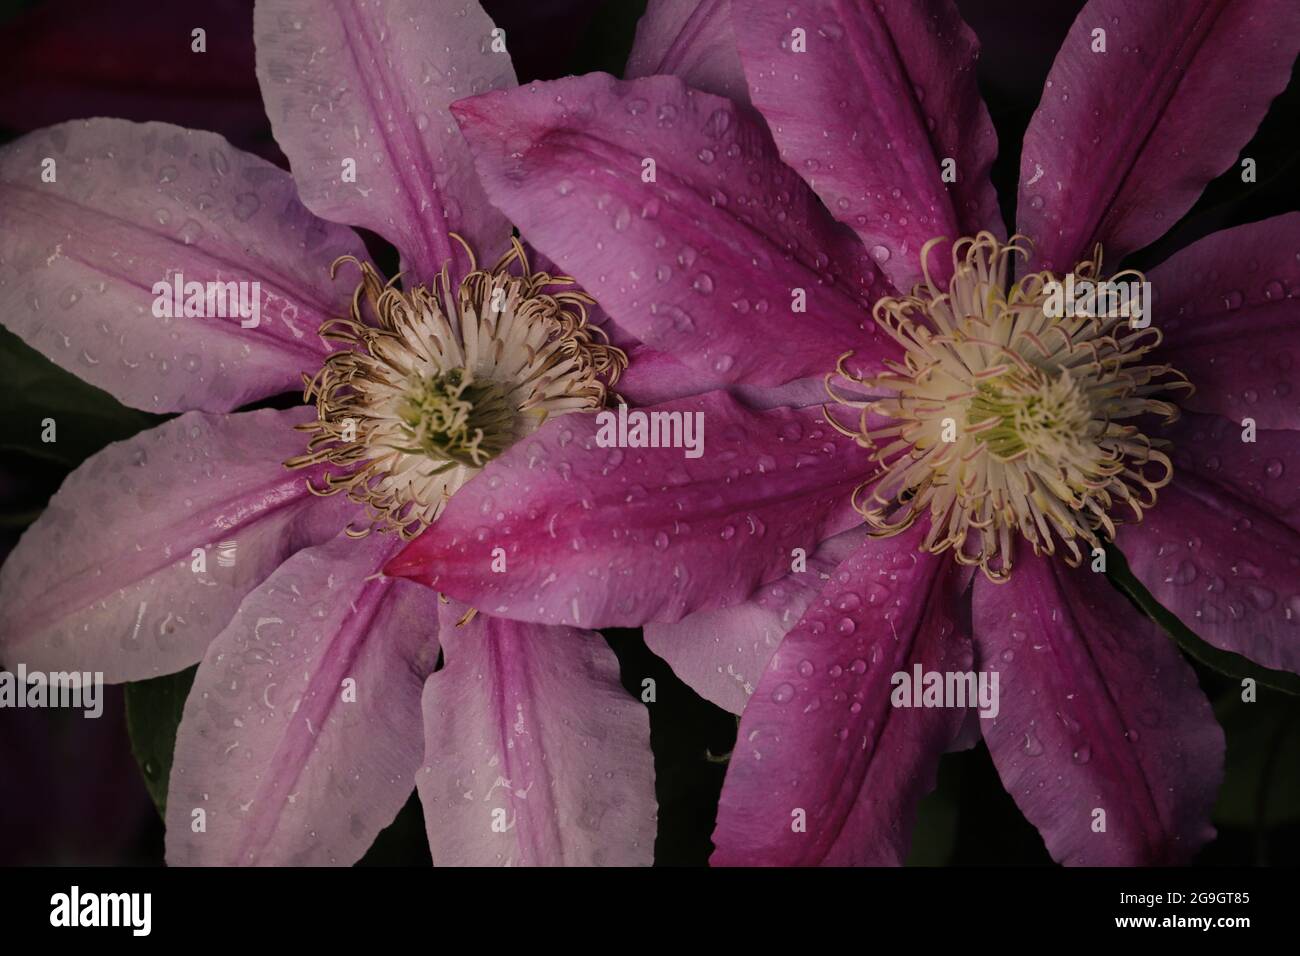 Die Makro-Aufnahme zeigt beeindruckende details der Clematis-Blüte (Klematis, Waldrebe) Foto de stock